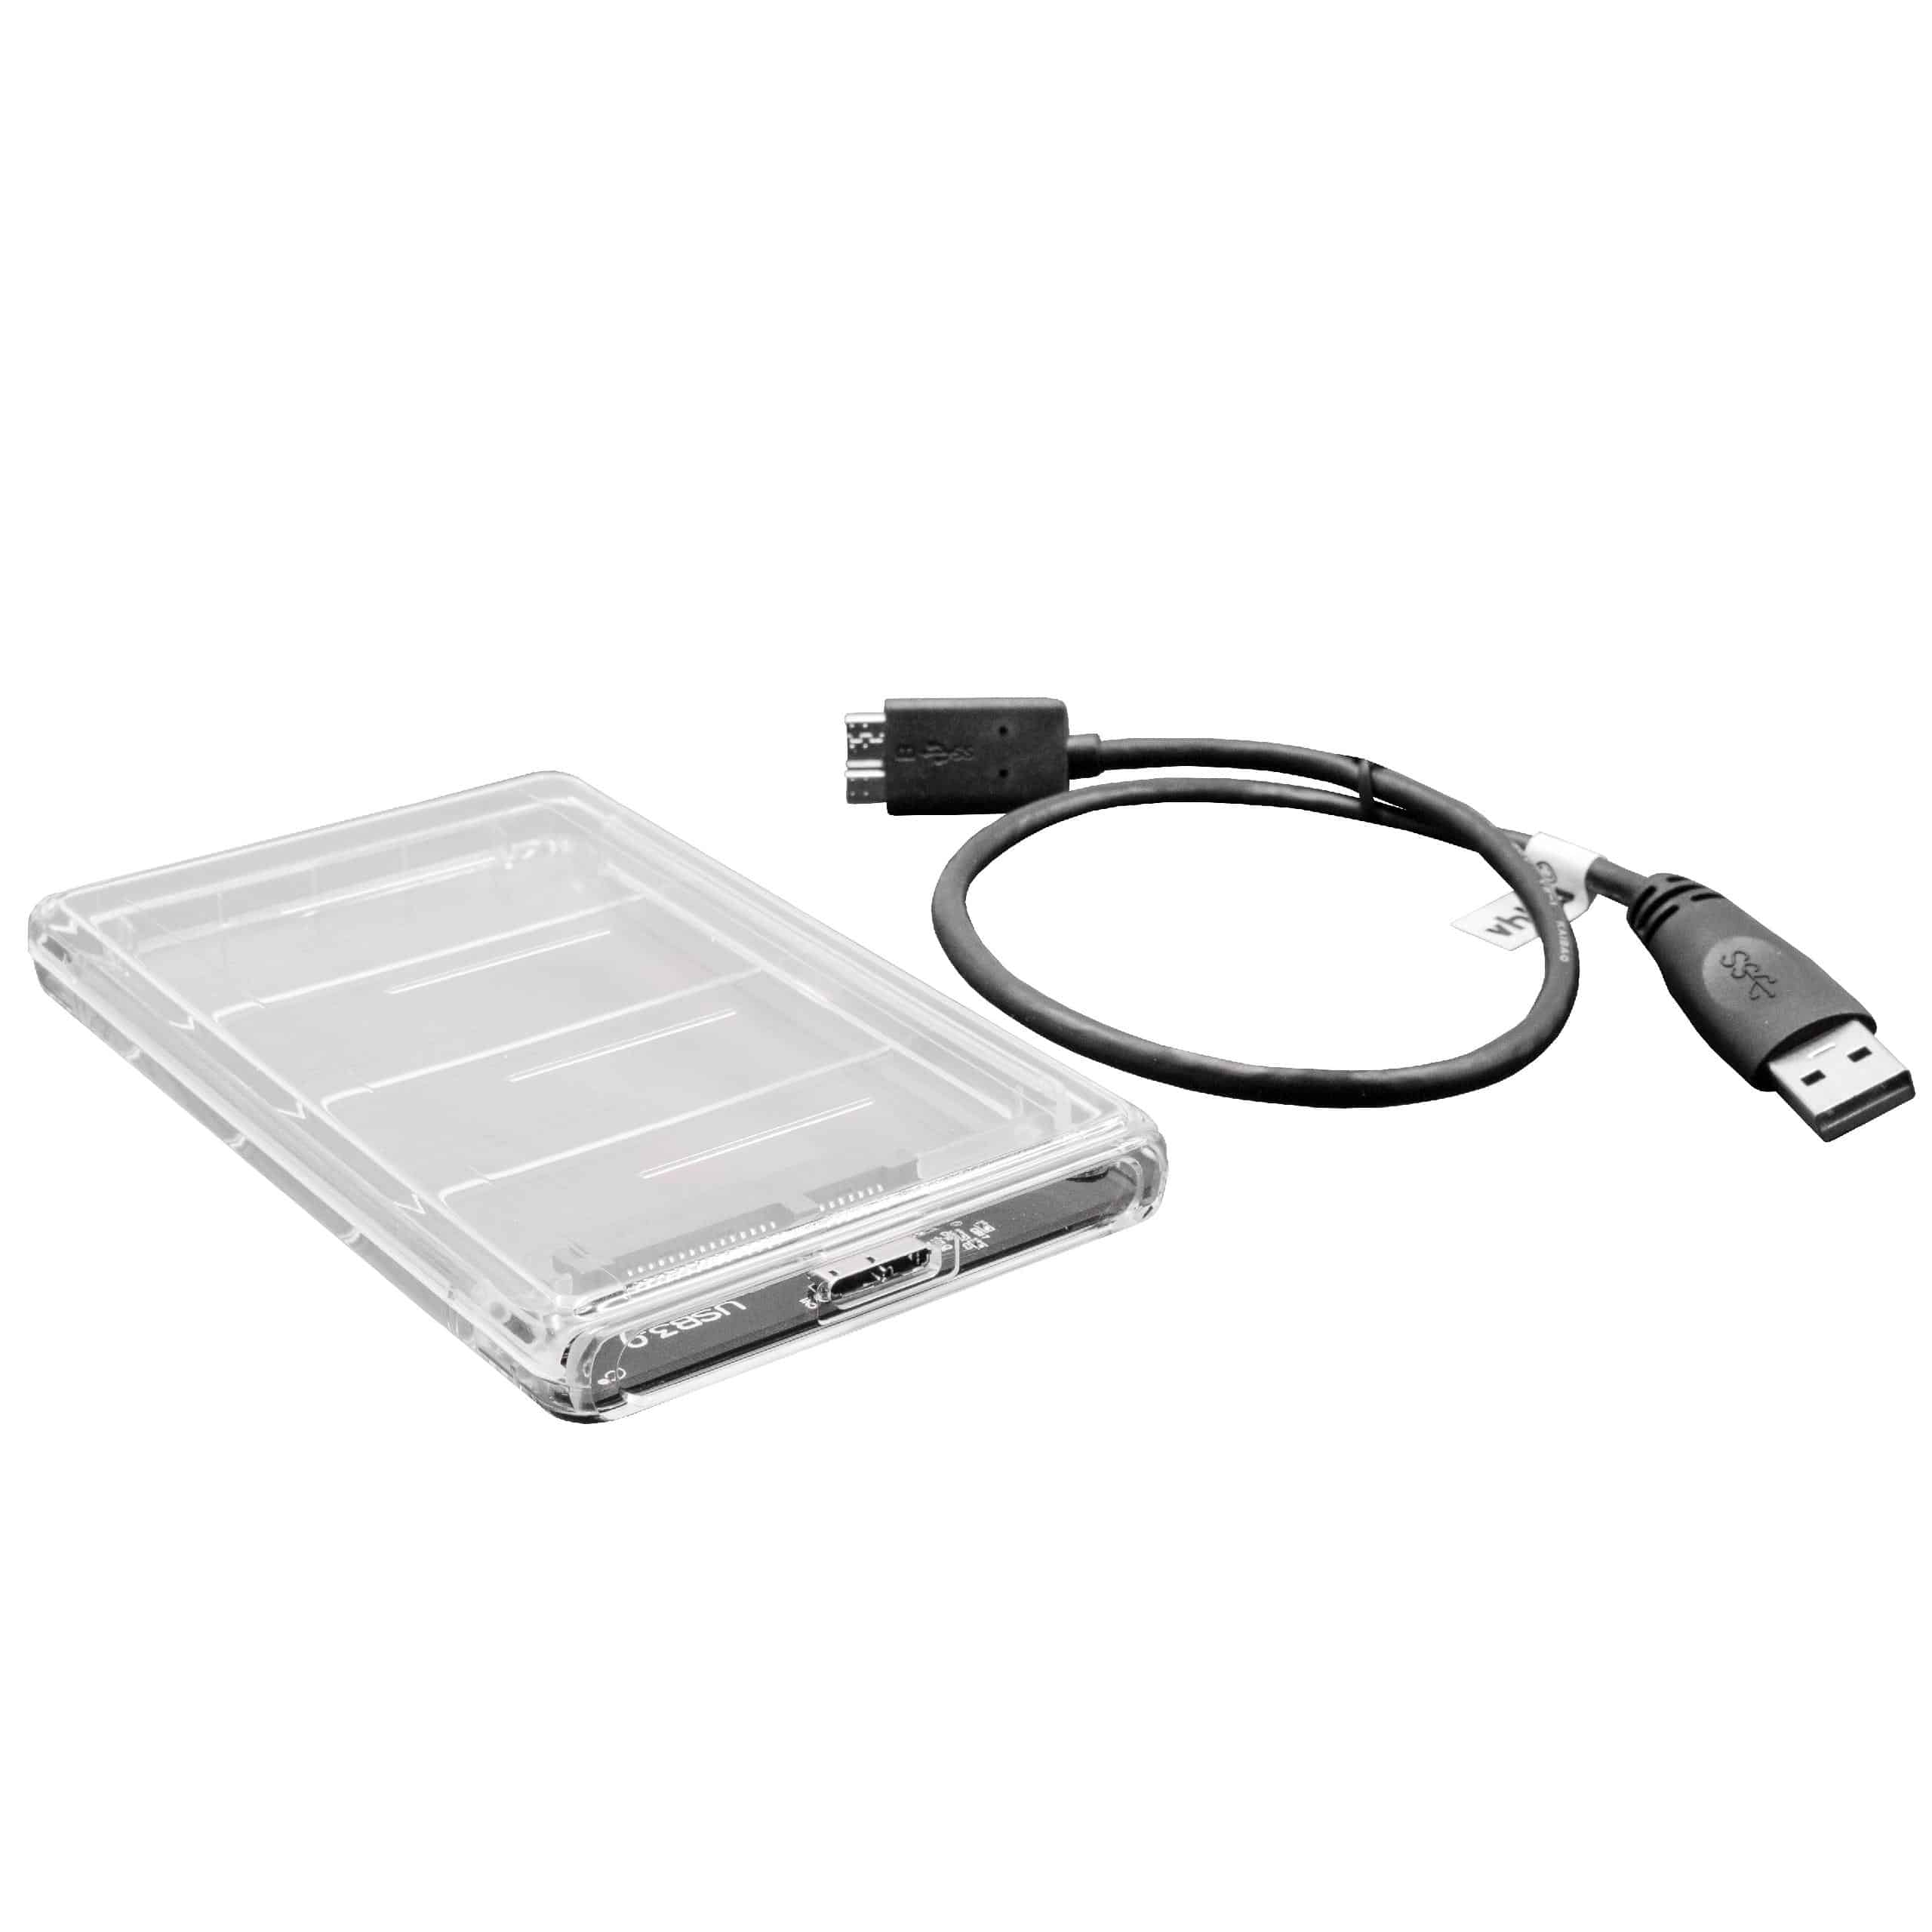 SATA III vers USB 3.0 Câble de raccordement pour disque dur HDD, SSD Plug & Play avec boîtier transparent